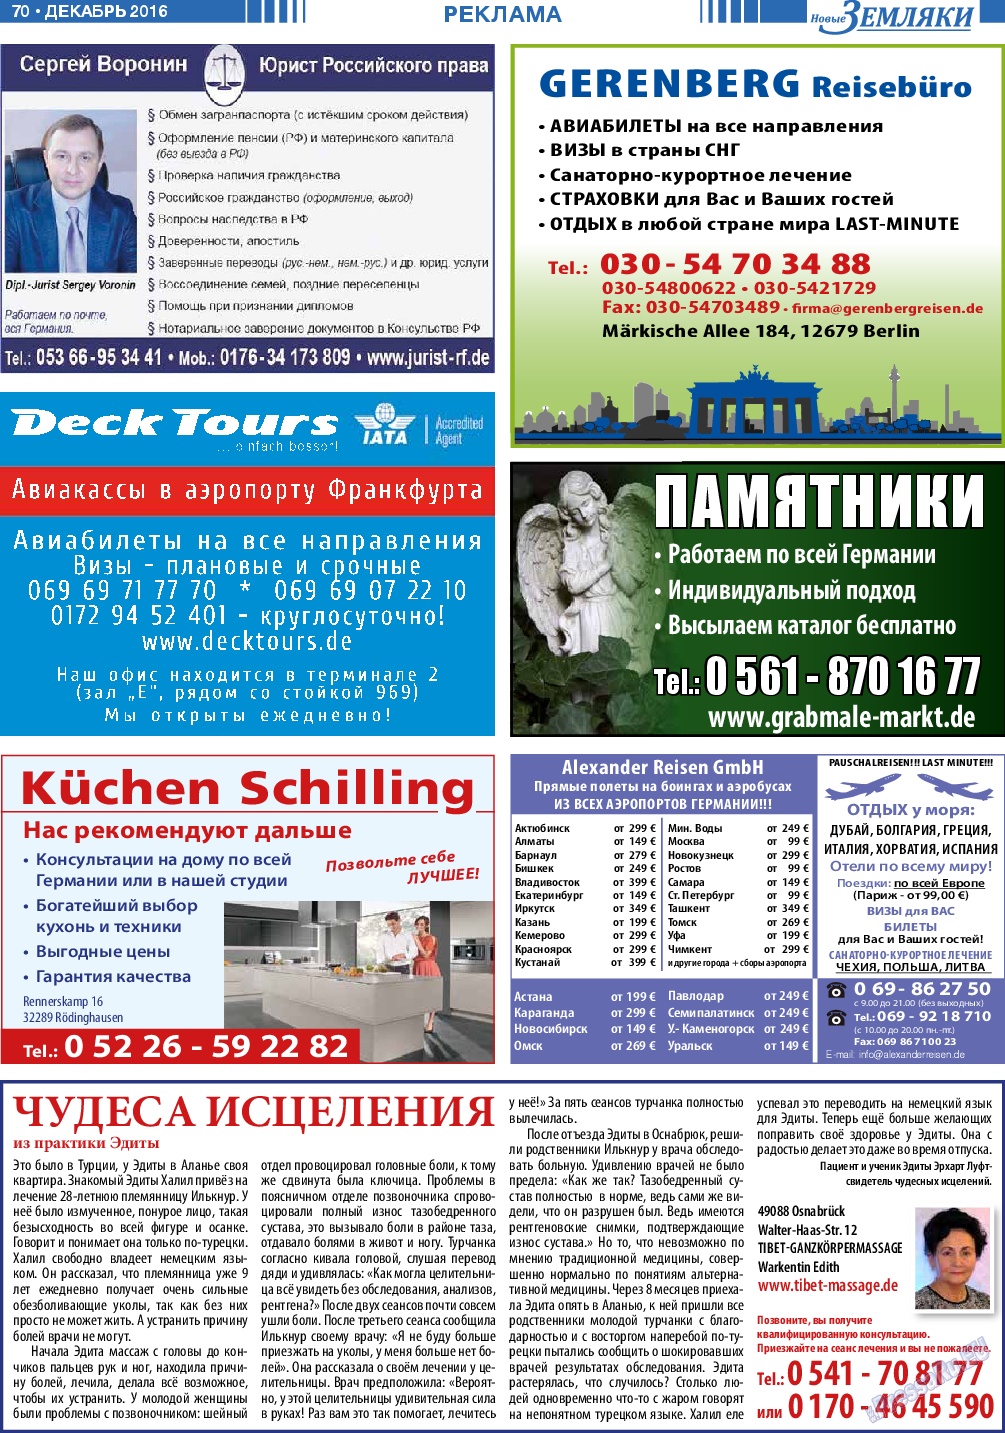 Новые Земляки, газета. 2016 №12 стр.70